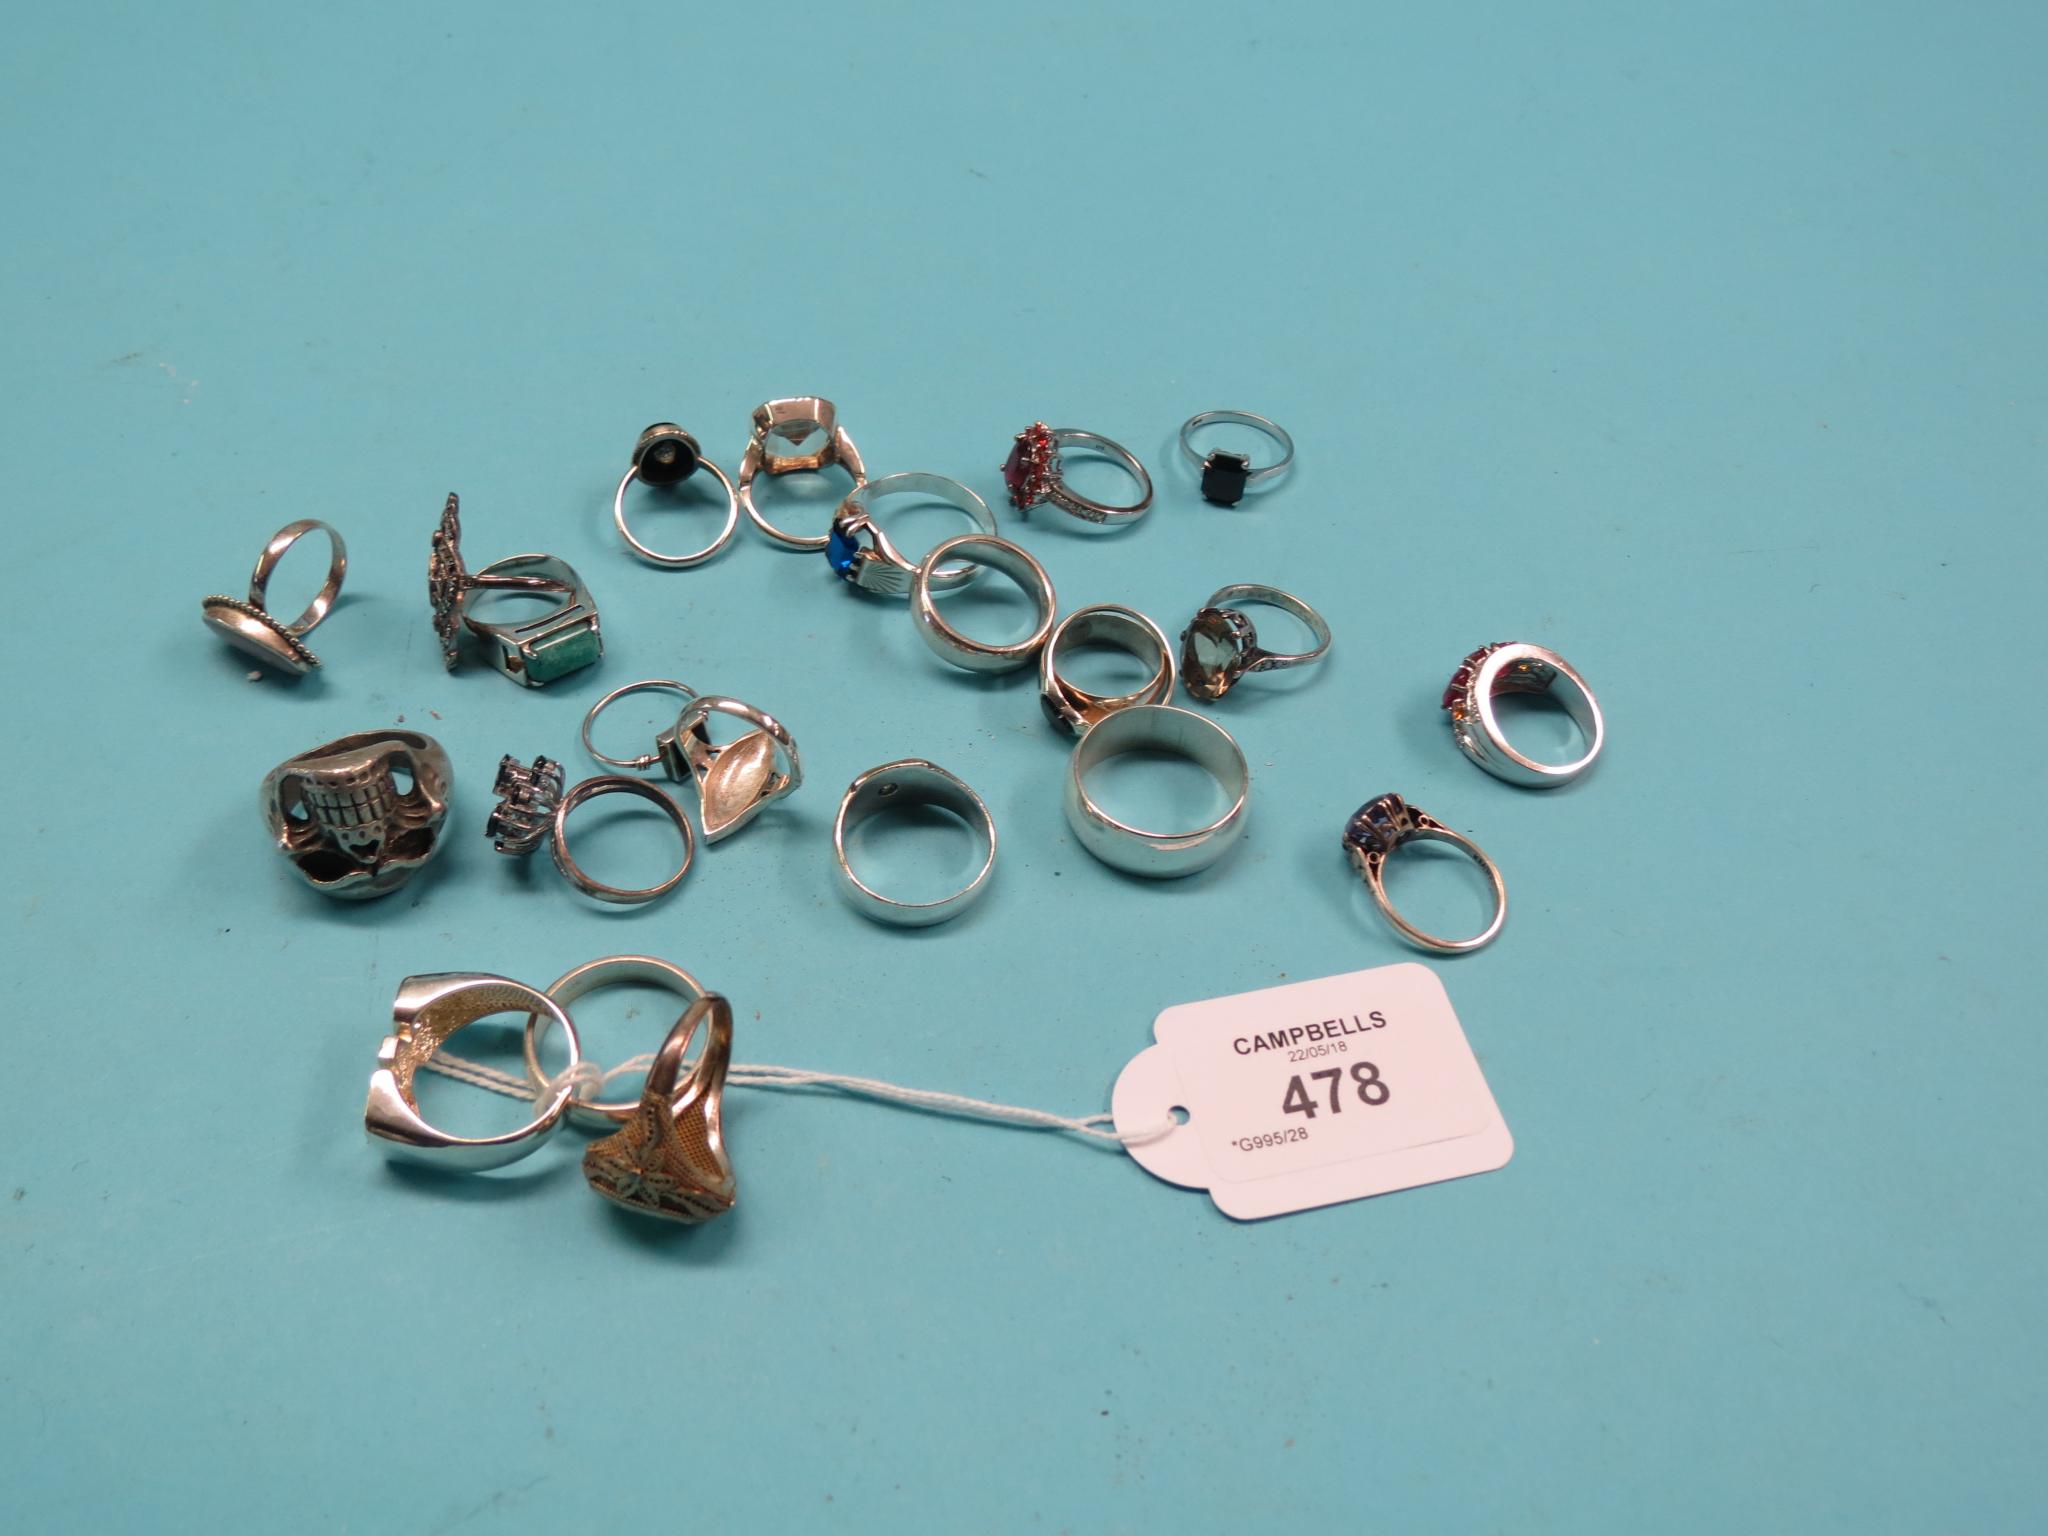 Twenty-three various rings, largely silver/white metal